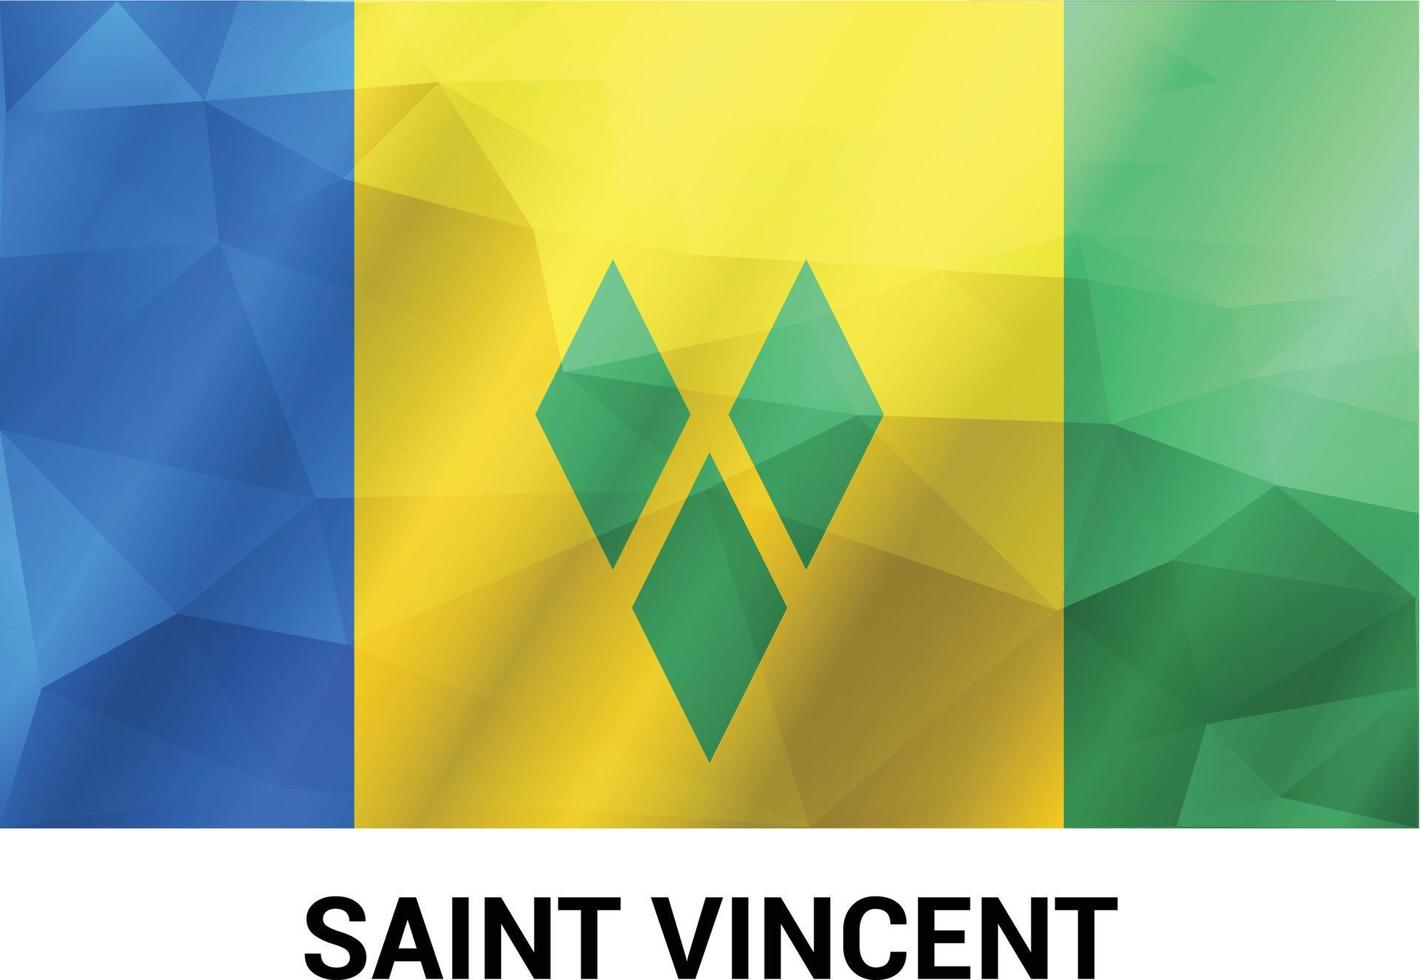 Saint Vincent flags design vector